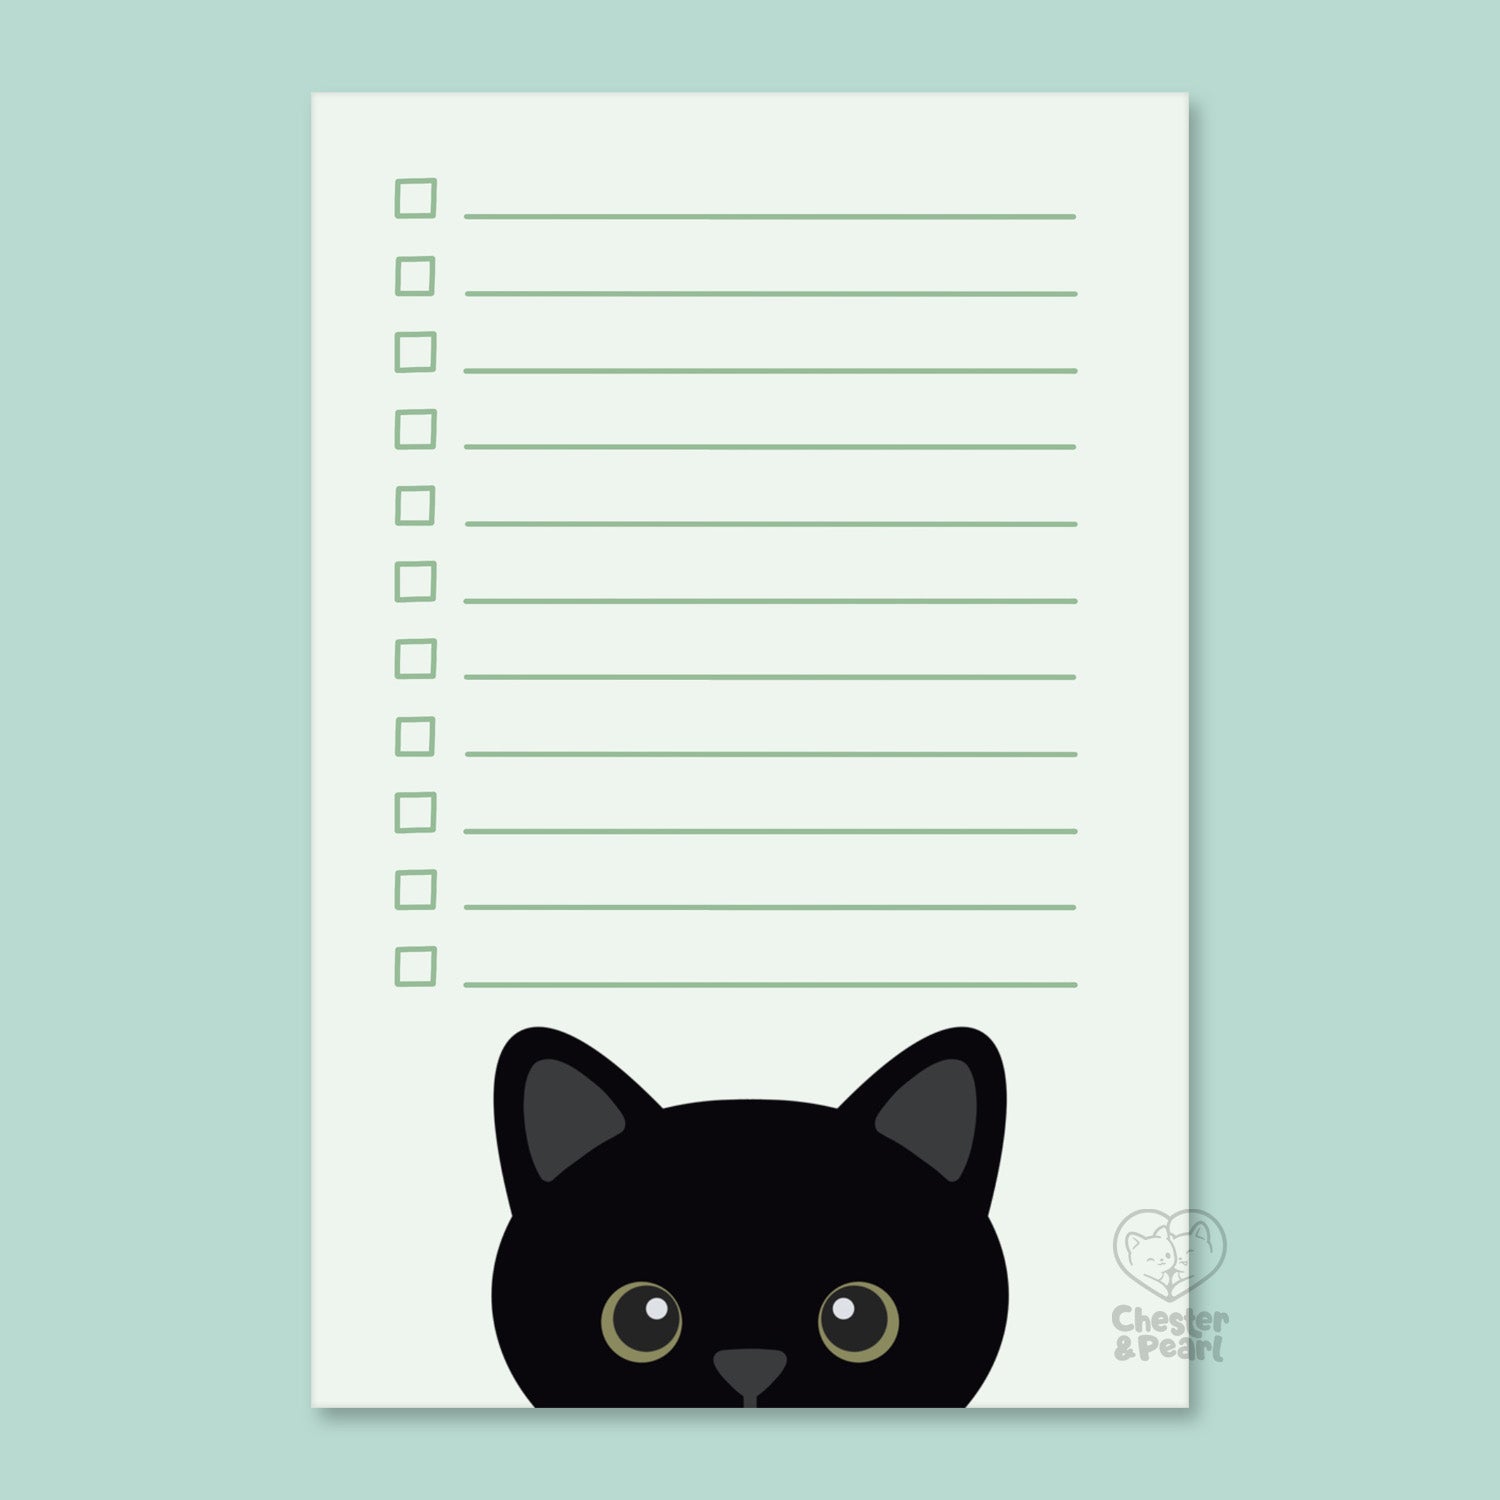 Peekaboo! Black Cat Notepad